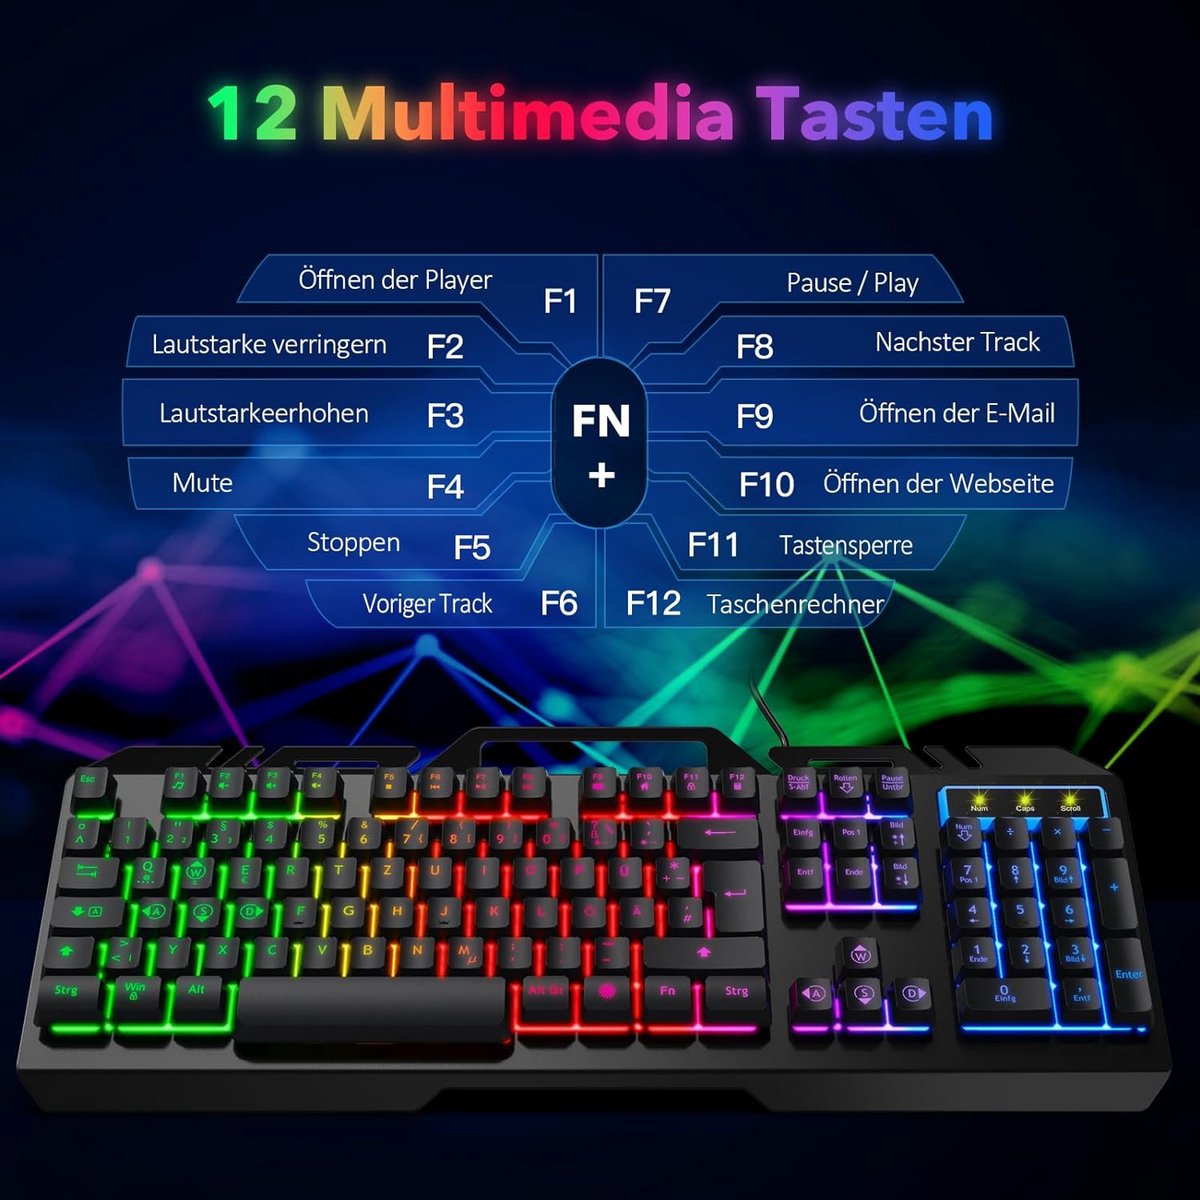 WisFox Office Gaming-toetsenbord Bedraad, Rainbow LED-verlicht, met houder voor mobiele telefoon, stille toetsaanslag, 19 toetsen Anti-Ghosting, robuust metalen frame, Duitse lay-out Compact, voor pc-gamers